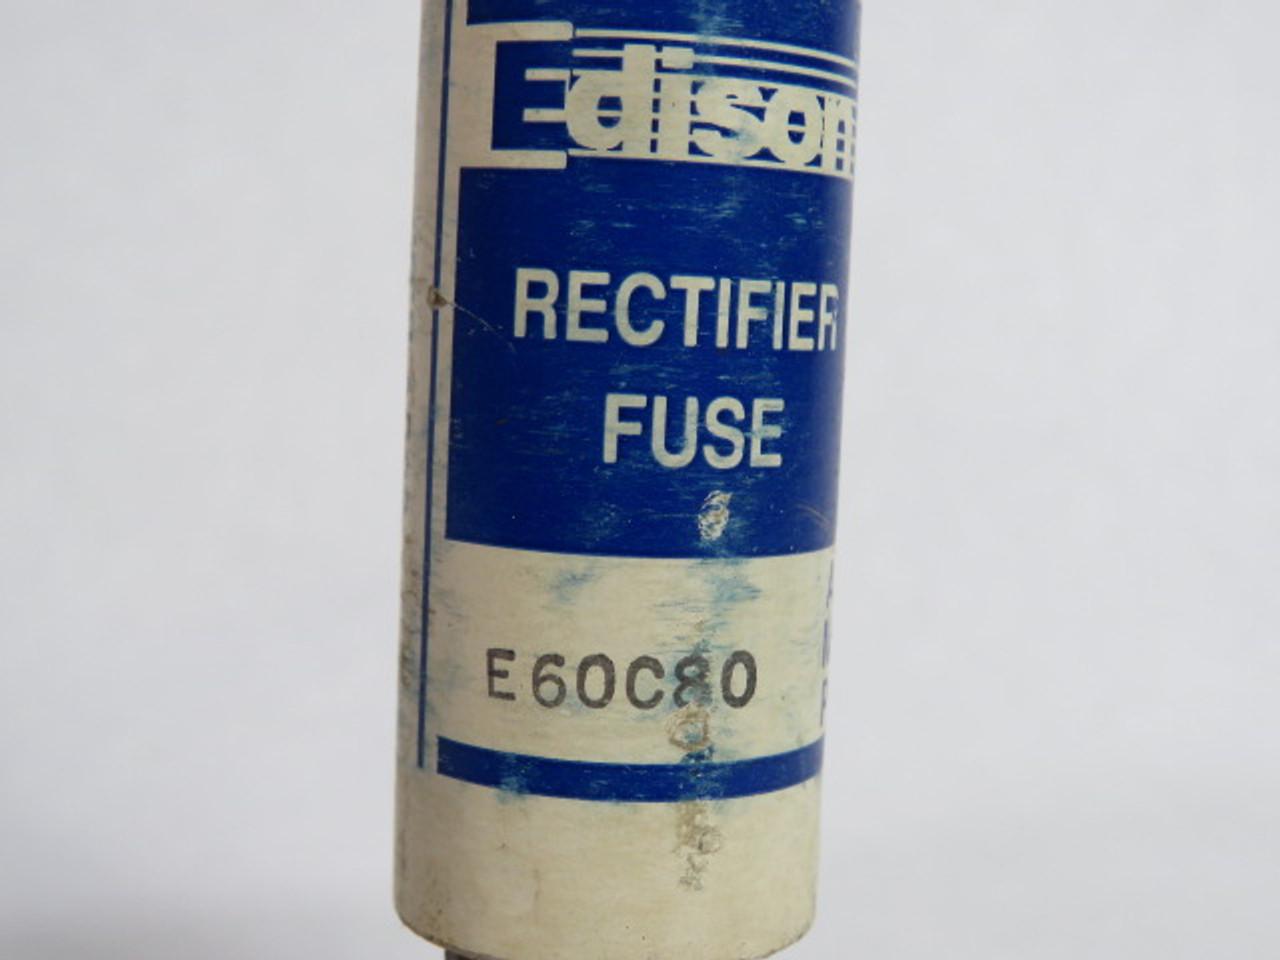 Edison E60C80 Rectifier Fuse 80A 600V USED